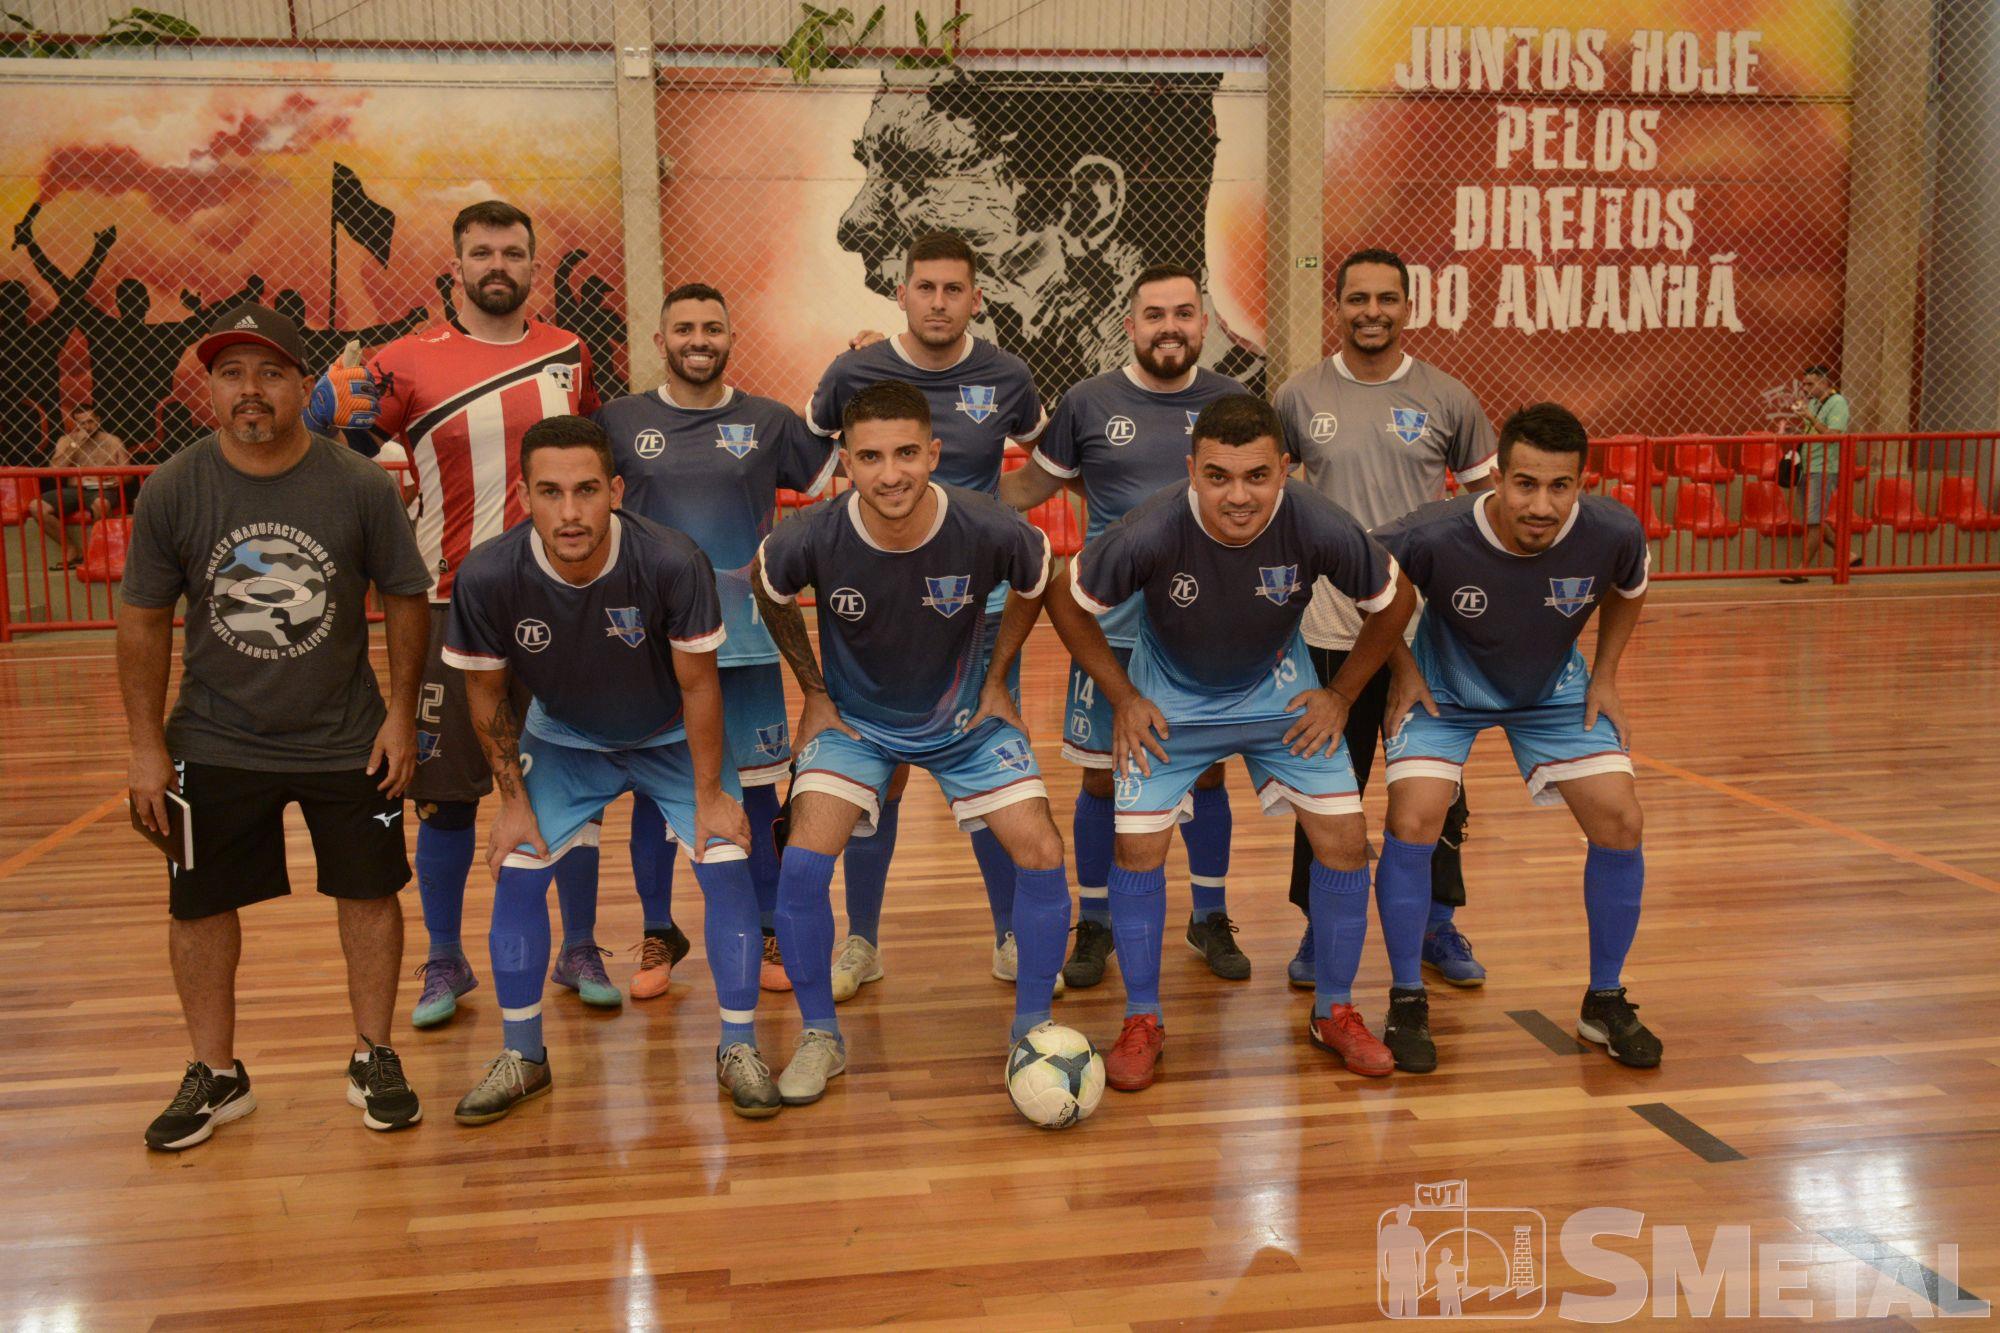 Foguinho/Imprensa SMetal , Confira o resultado da 5ª rodada da Taça Papagaio de Futsal; fotos 